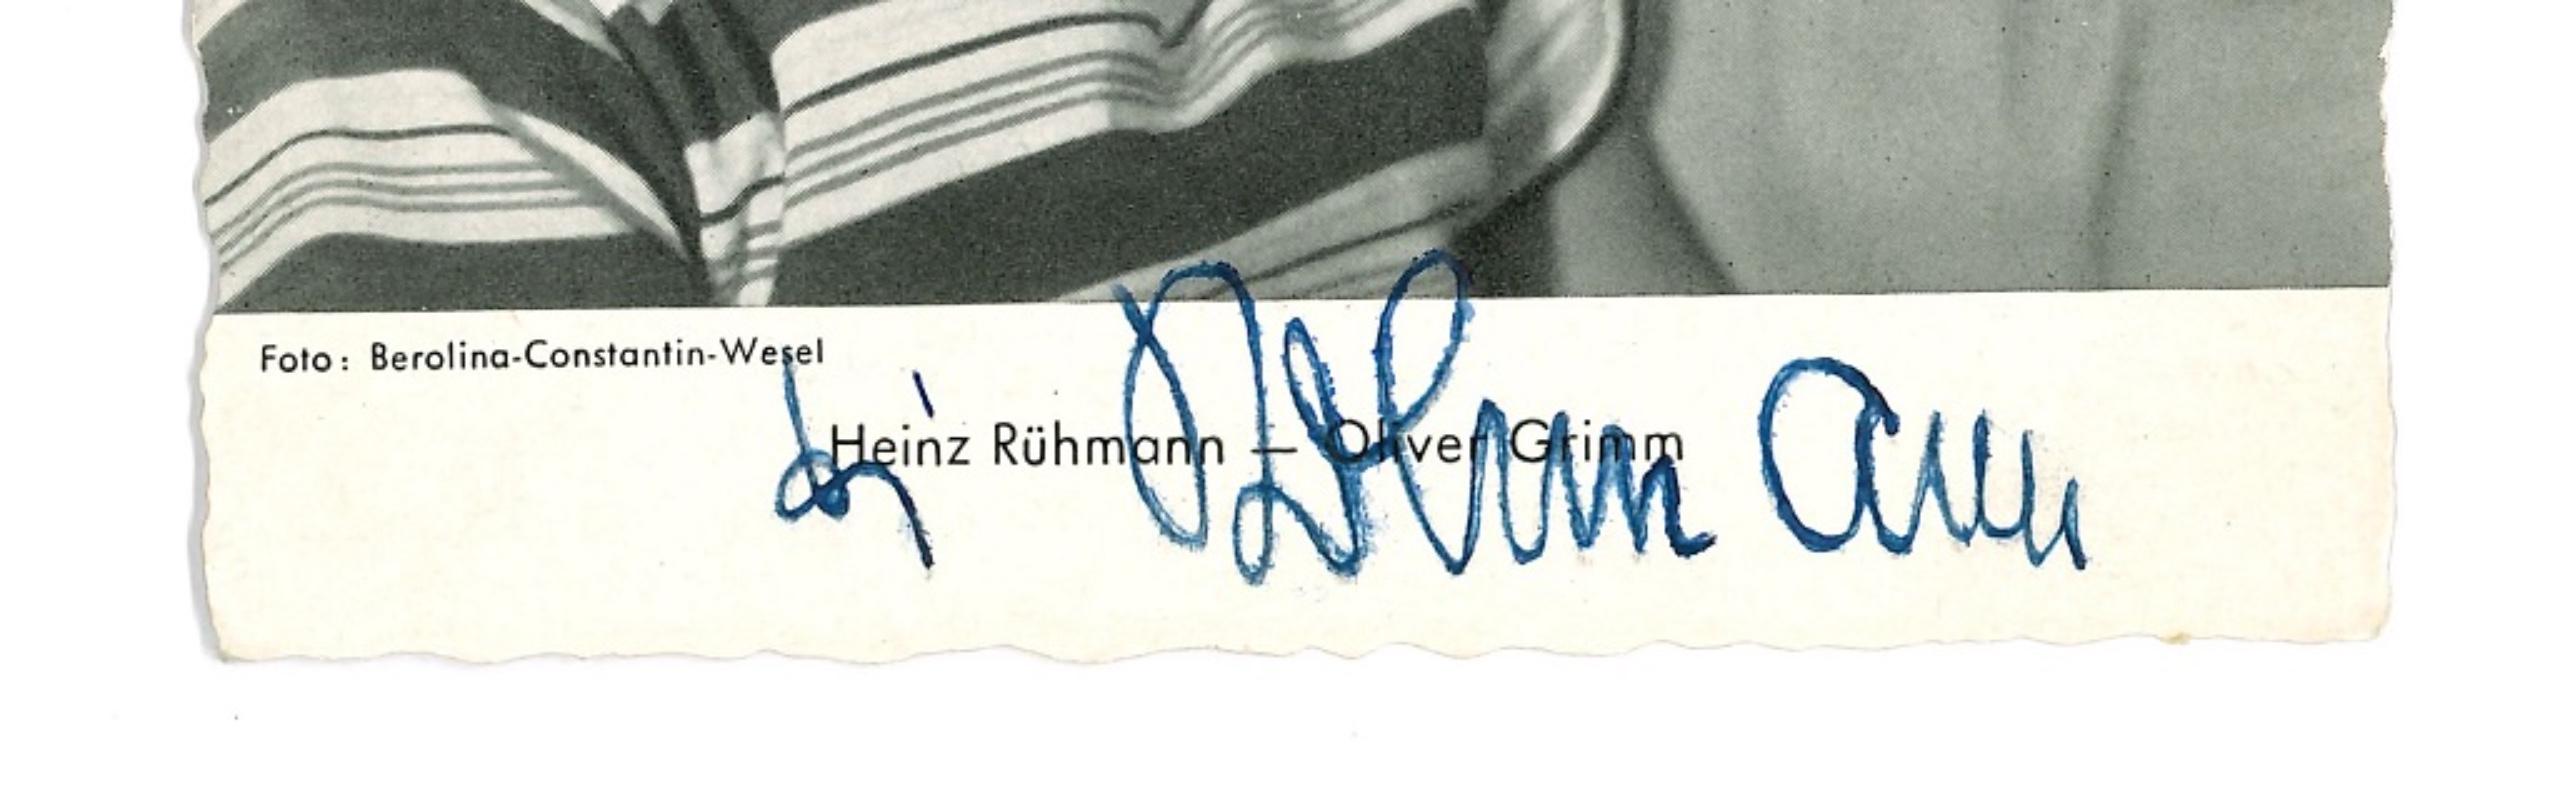 Autographed Portrait of H. Rühmann und O. Grimm - Vintage b/w Postcard - 1950s - Photograph by Unknown